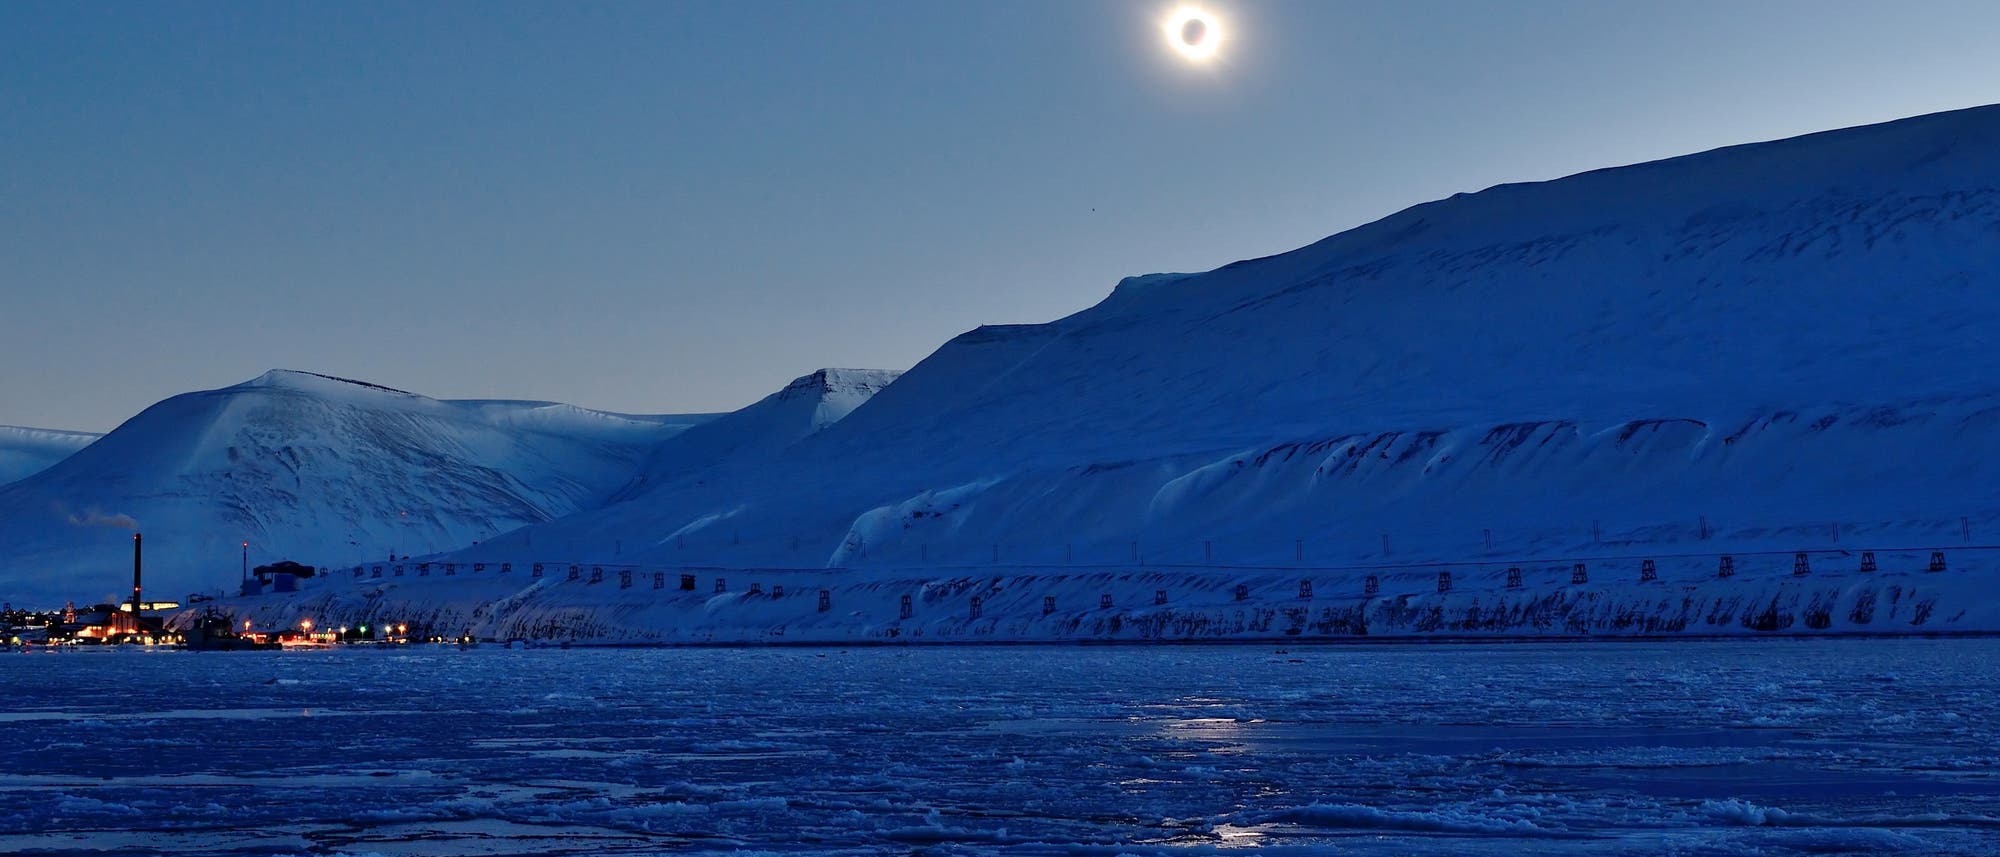 Sonnenfinsternis in der Arktis im Jahr 2015